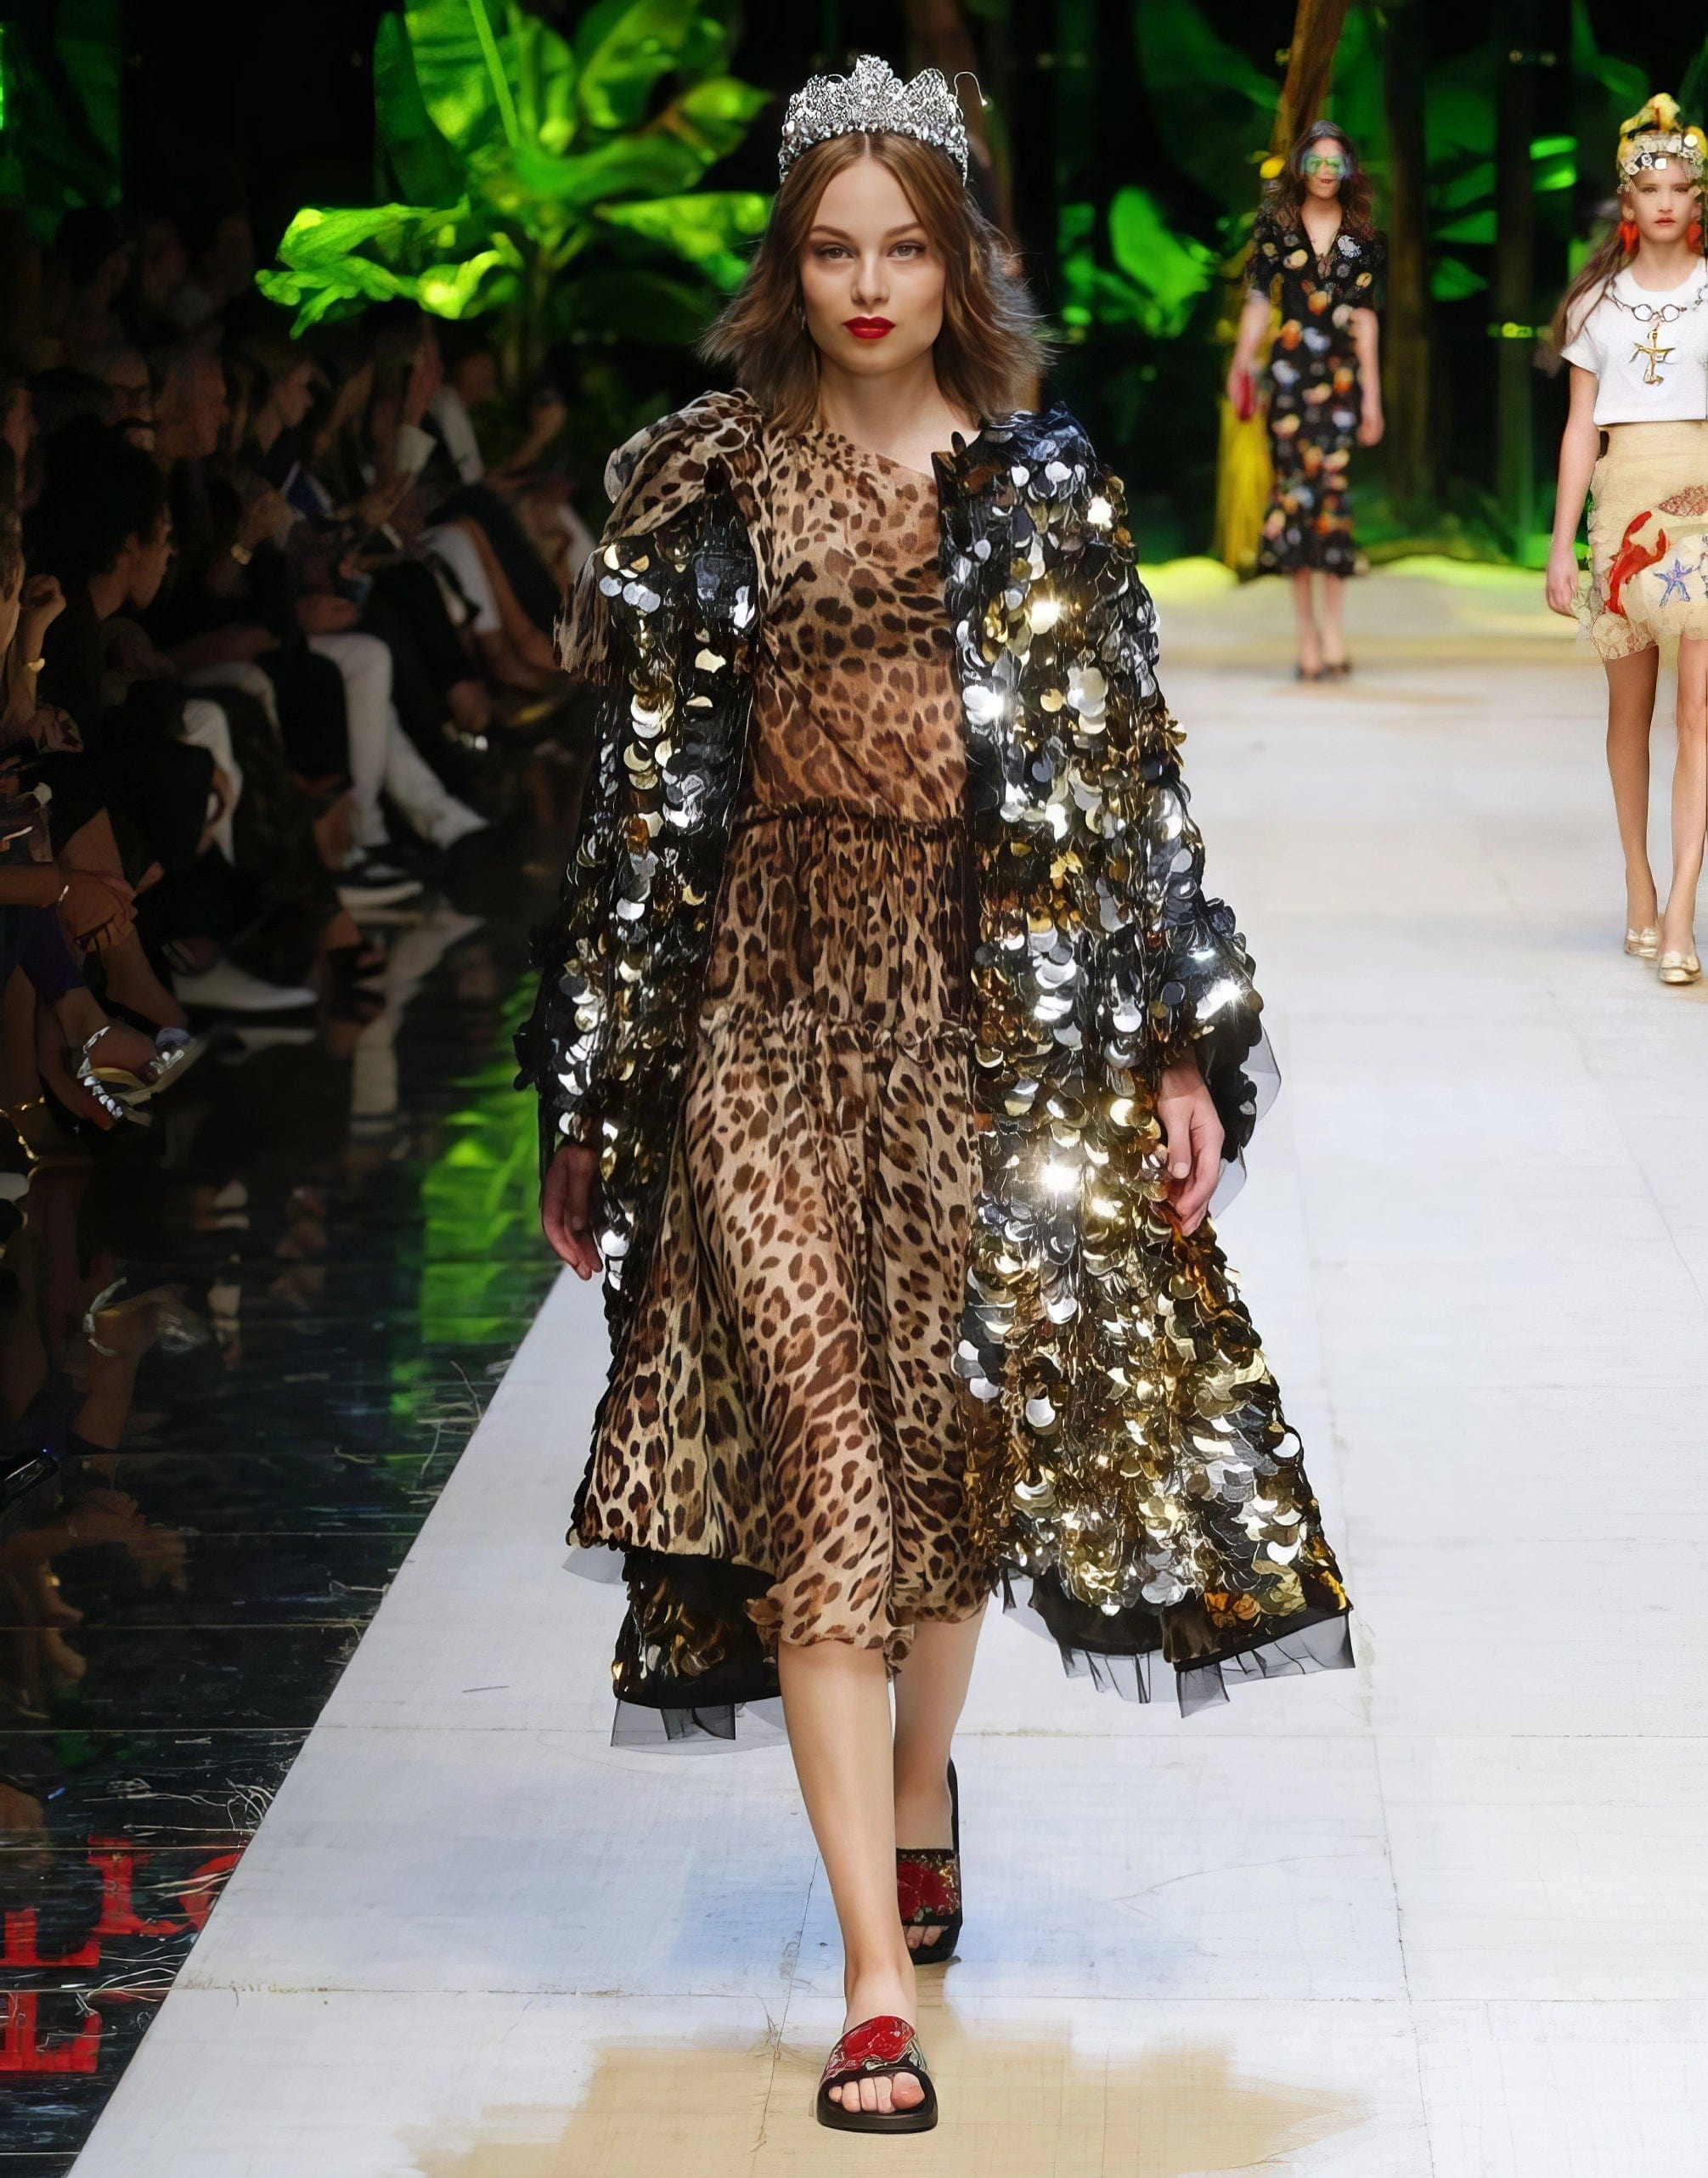 Leopard Printed Silk Chiffon Dress